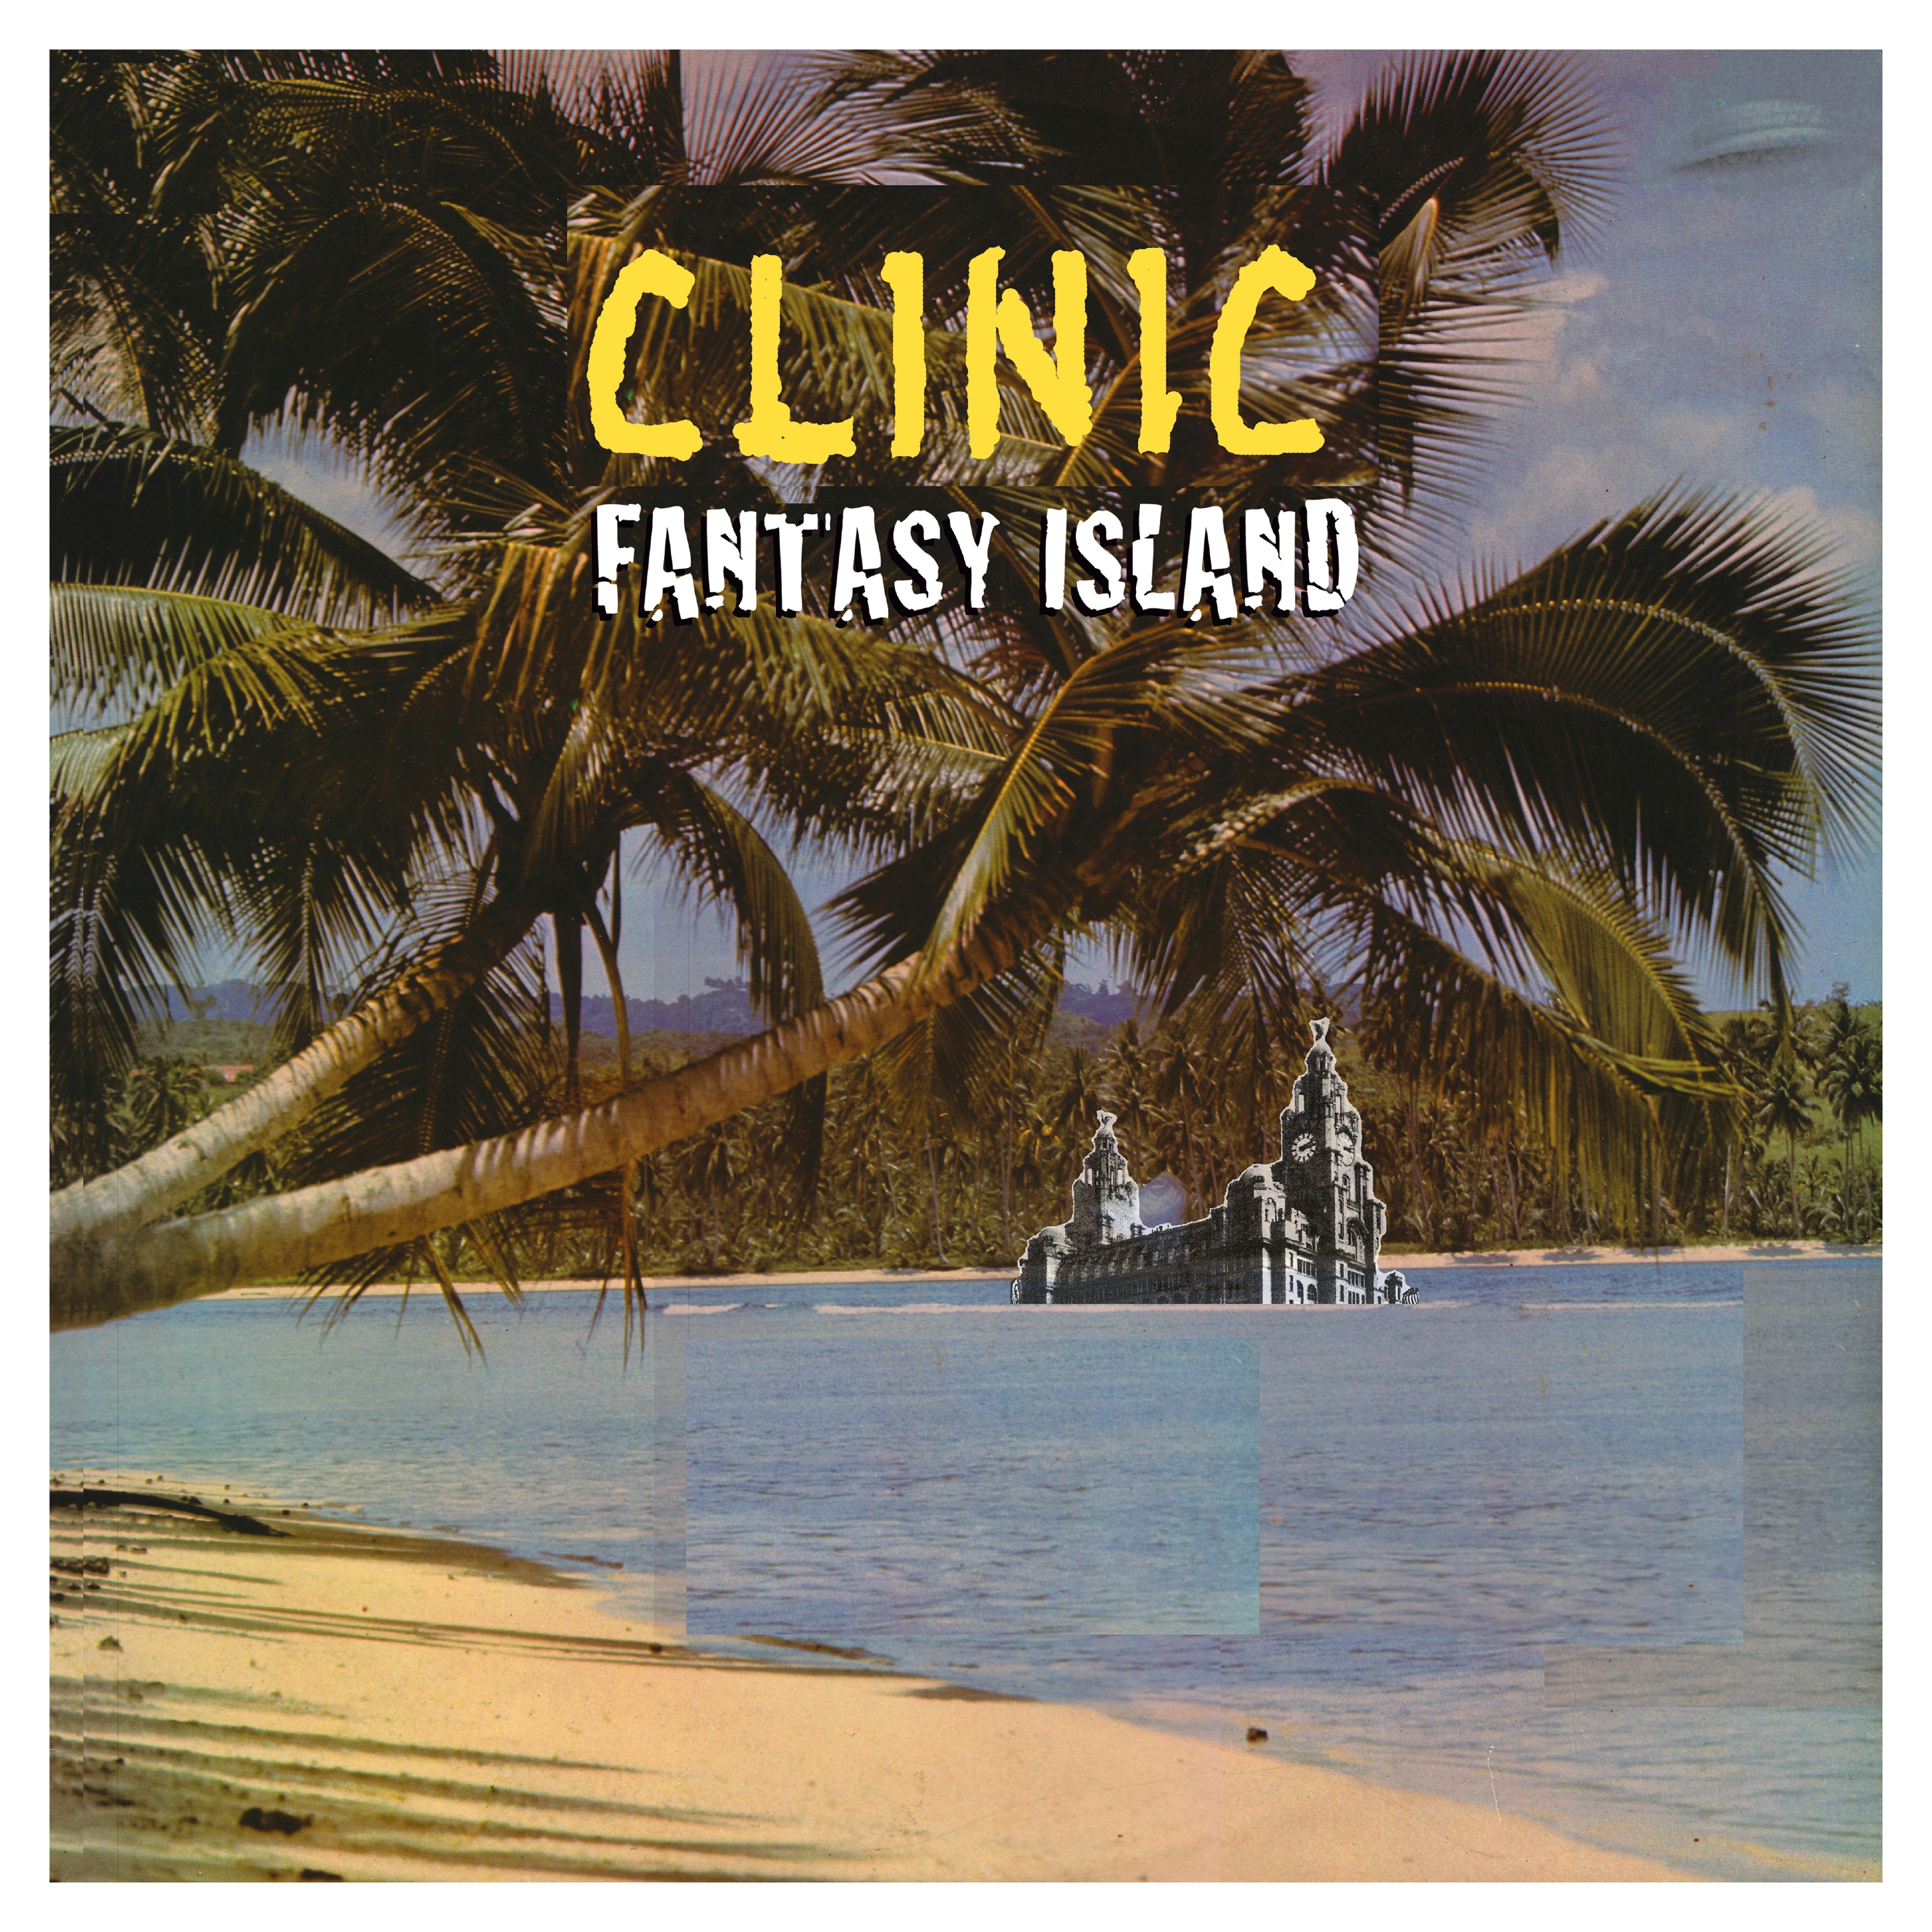 Album artwork for Album artwork for Fantasy Island by Clinic by Fantasy Island - Clinic